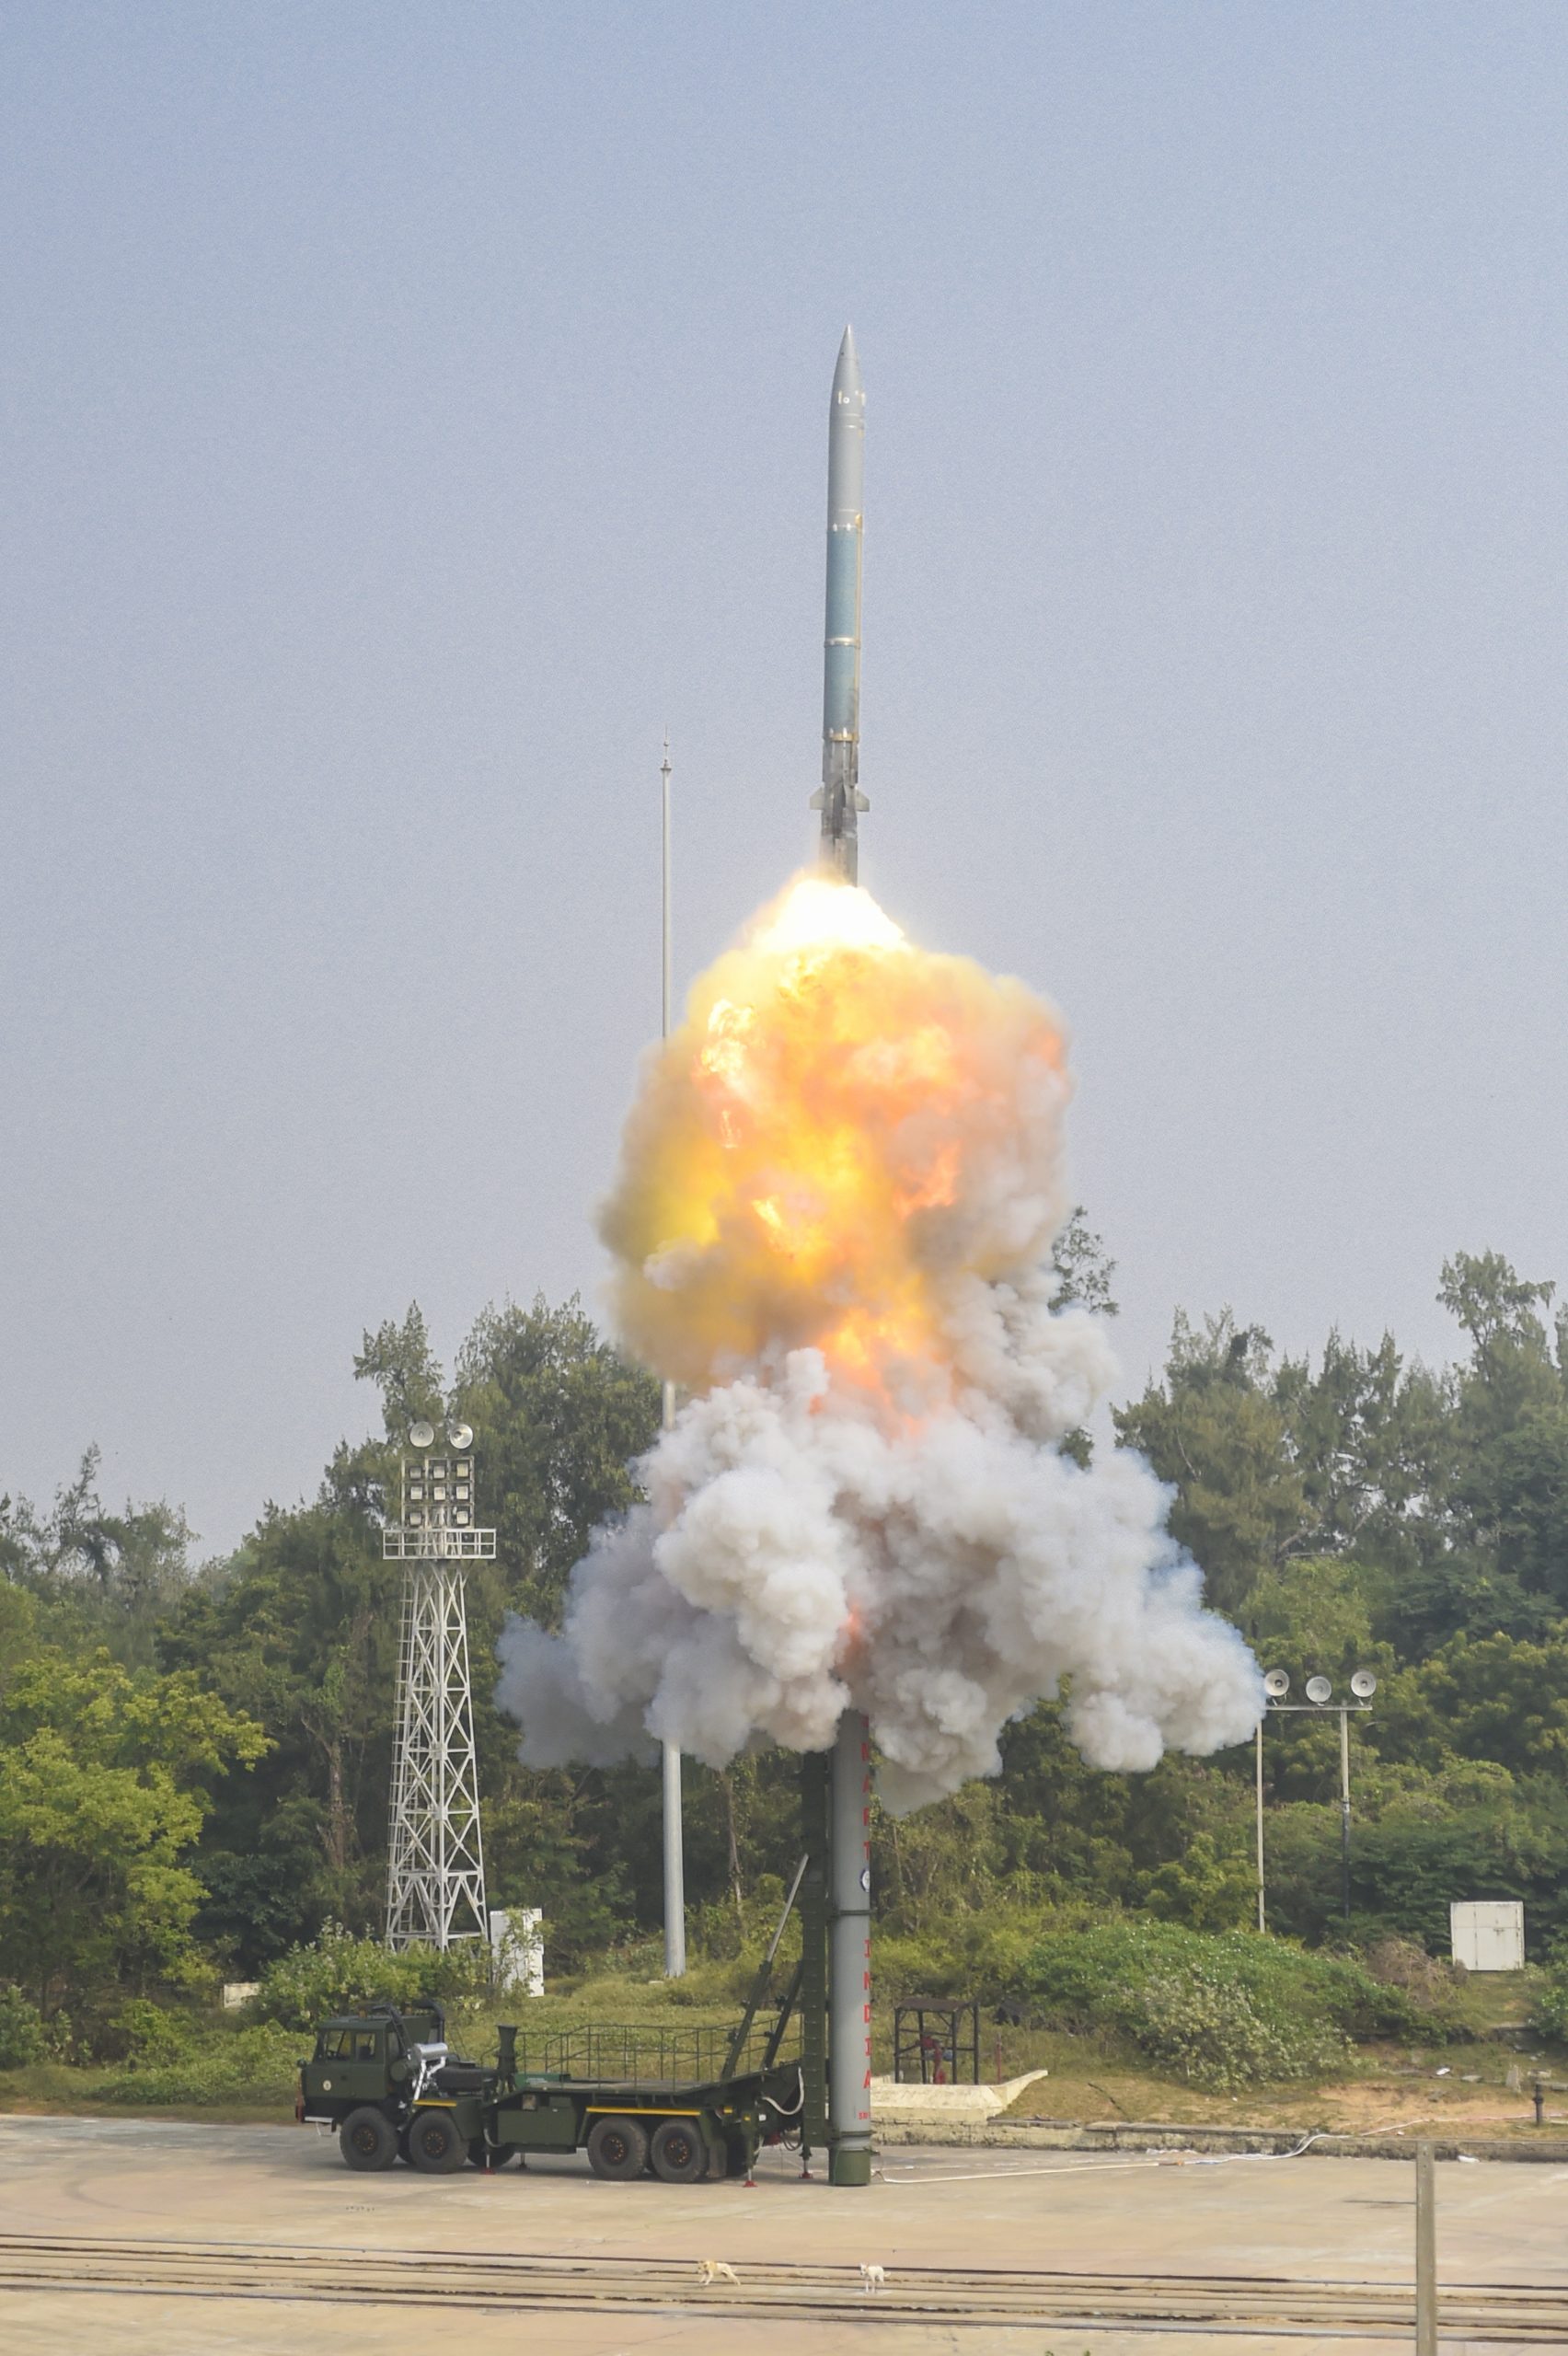 भारत ने किया सुपरसोनिक मिसाइल असिस्टेड टॉरपीडो का सफल प्रक्षेपण